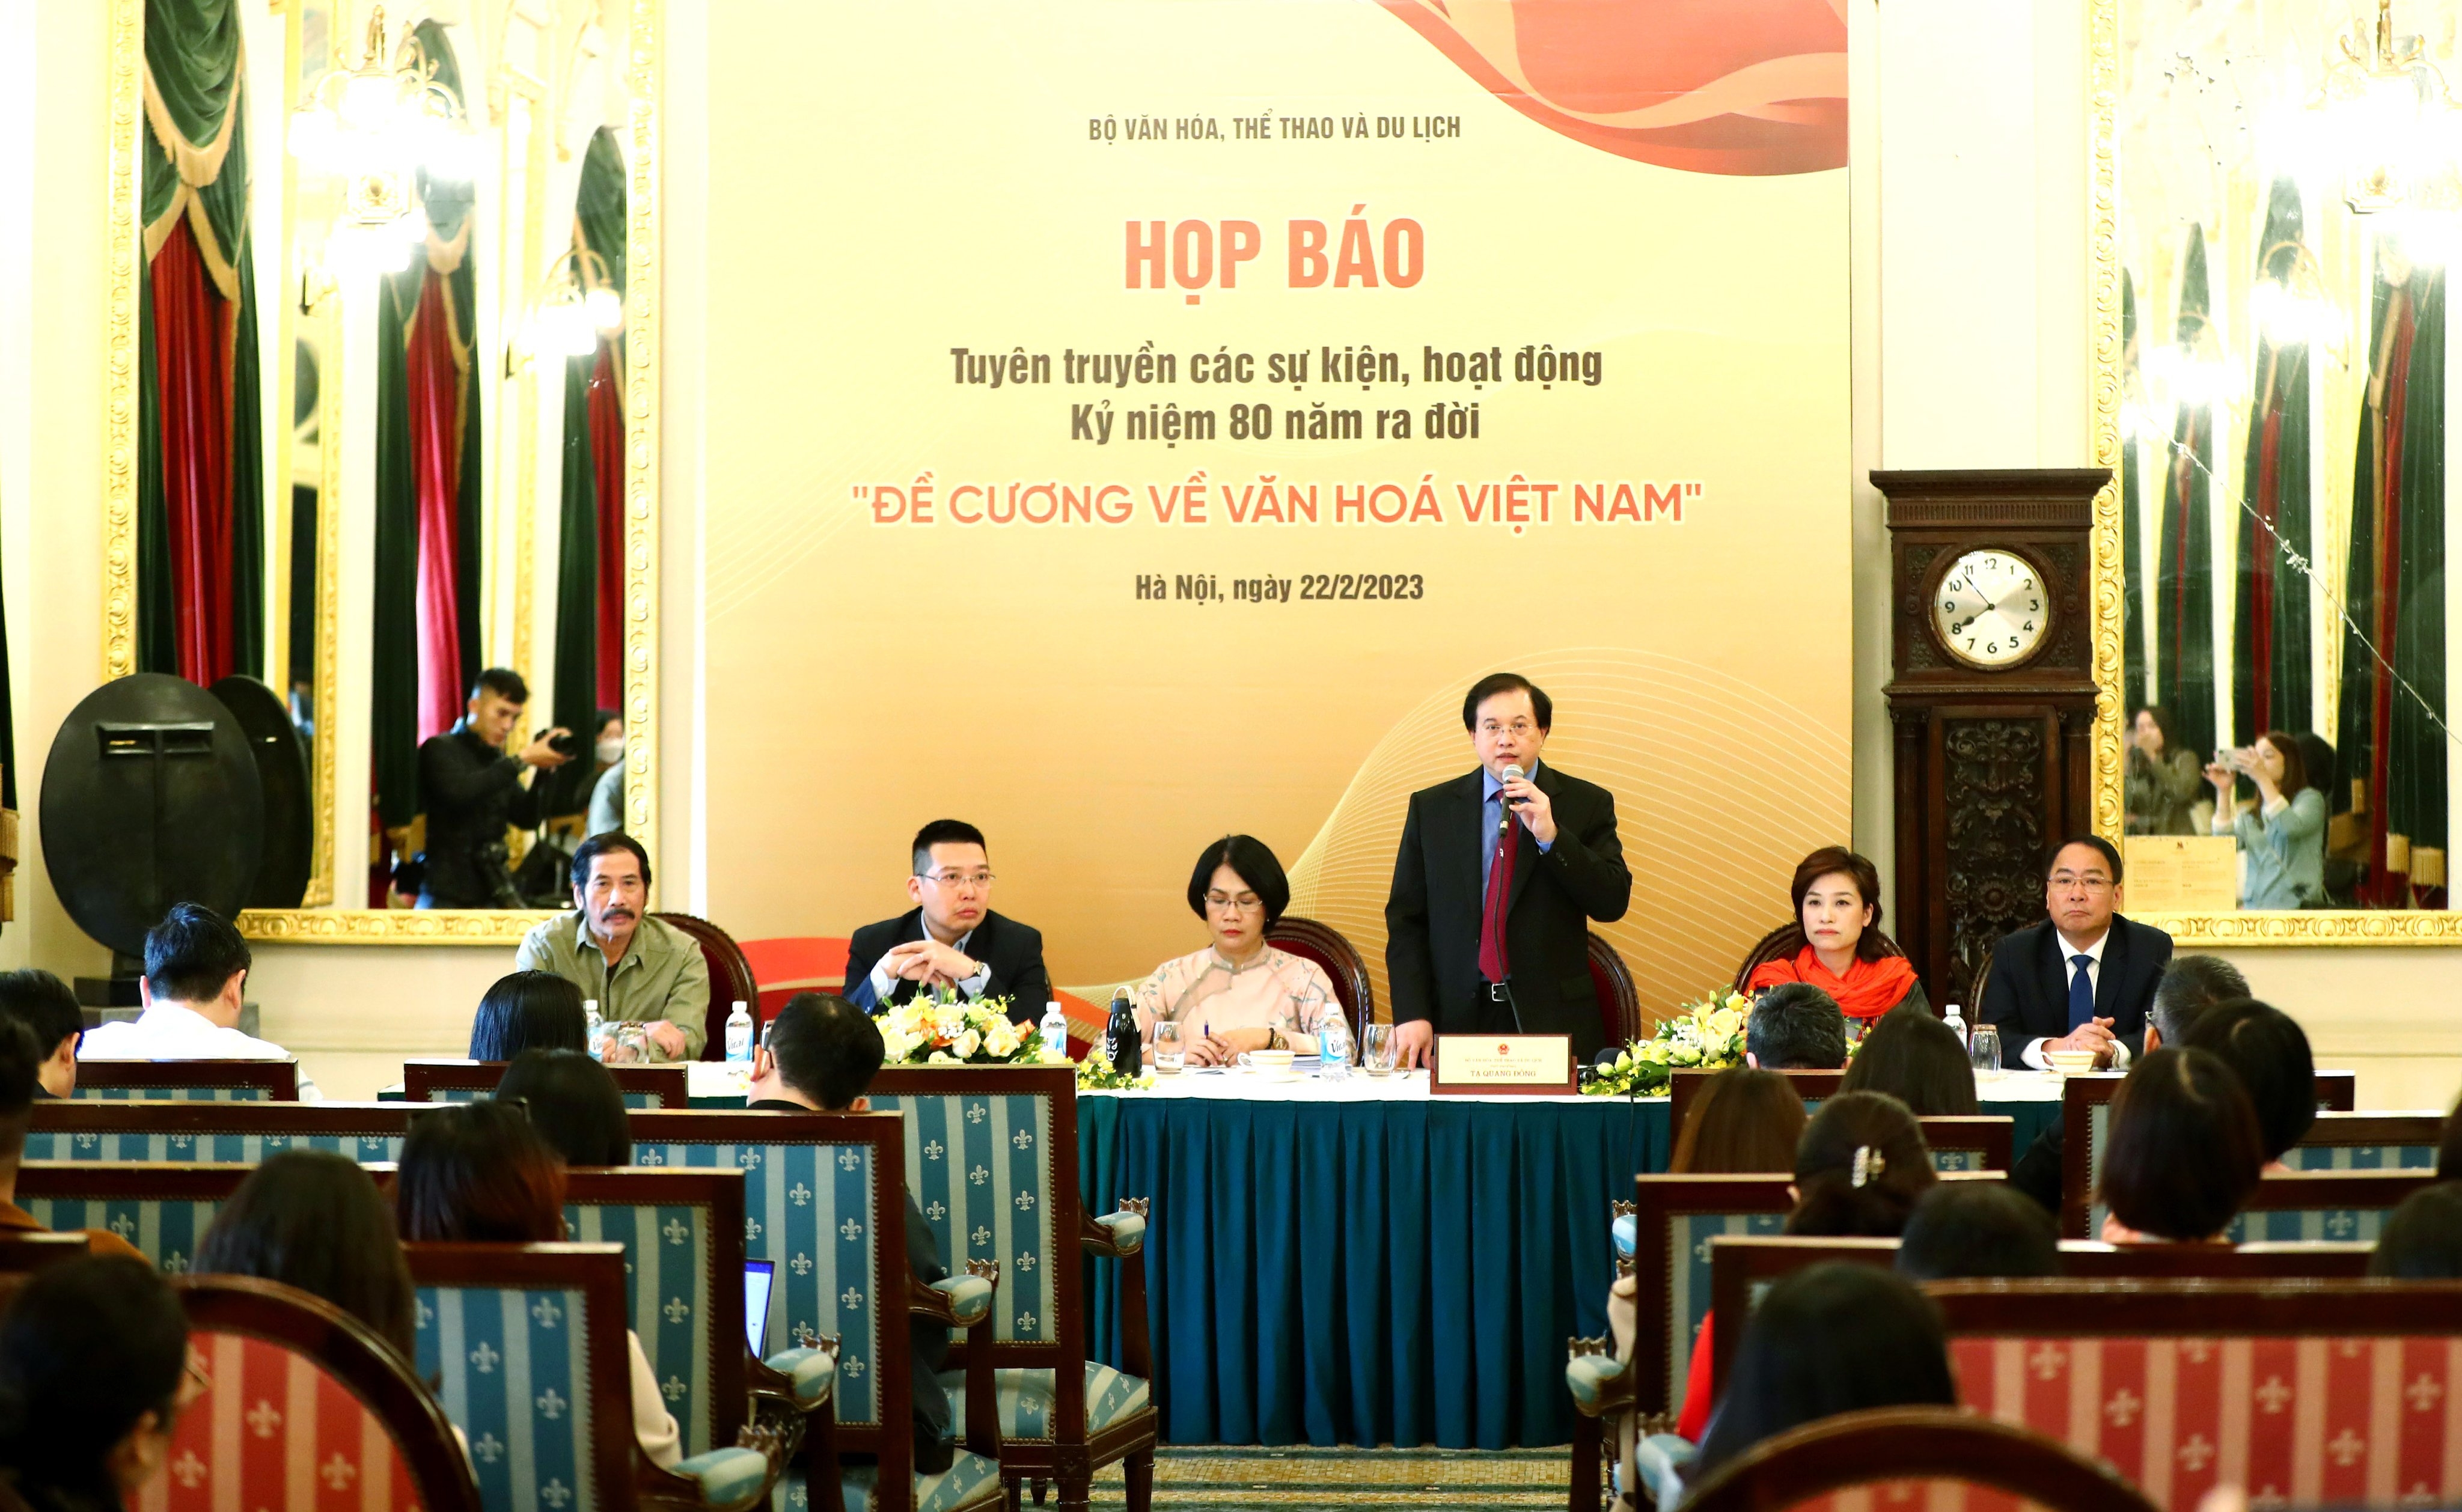 Nhiều hoạt động quy mô khẳng định sức sống trường tồn của "Đề cương về Văn hóa Việt Nam"